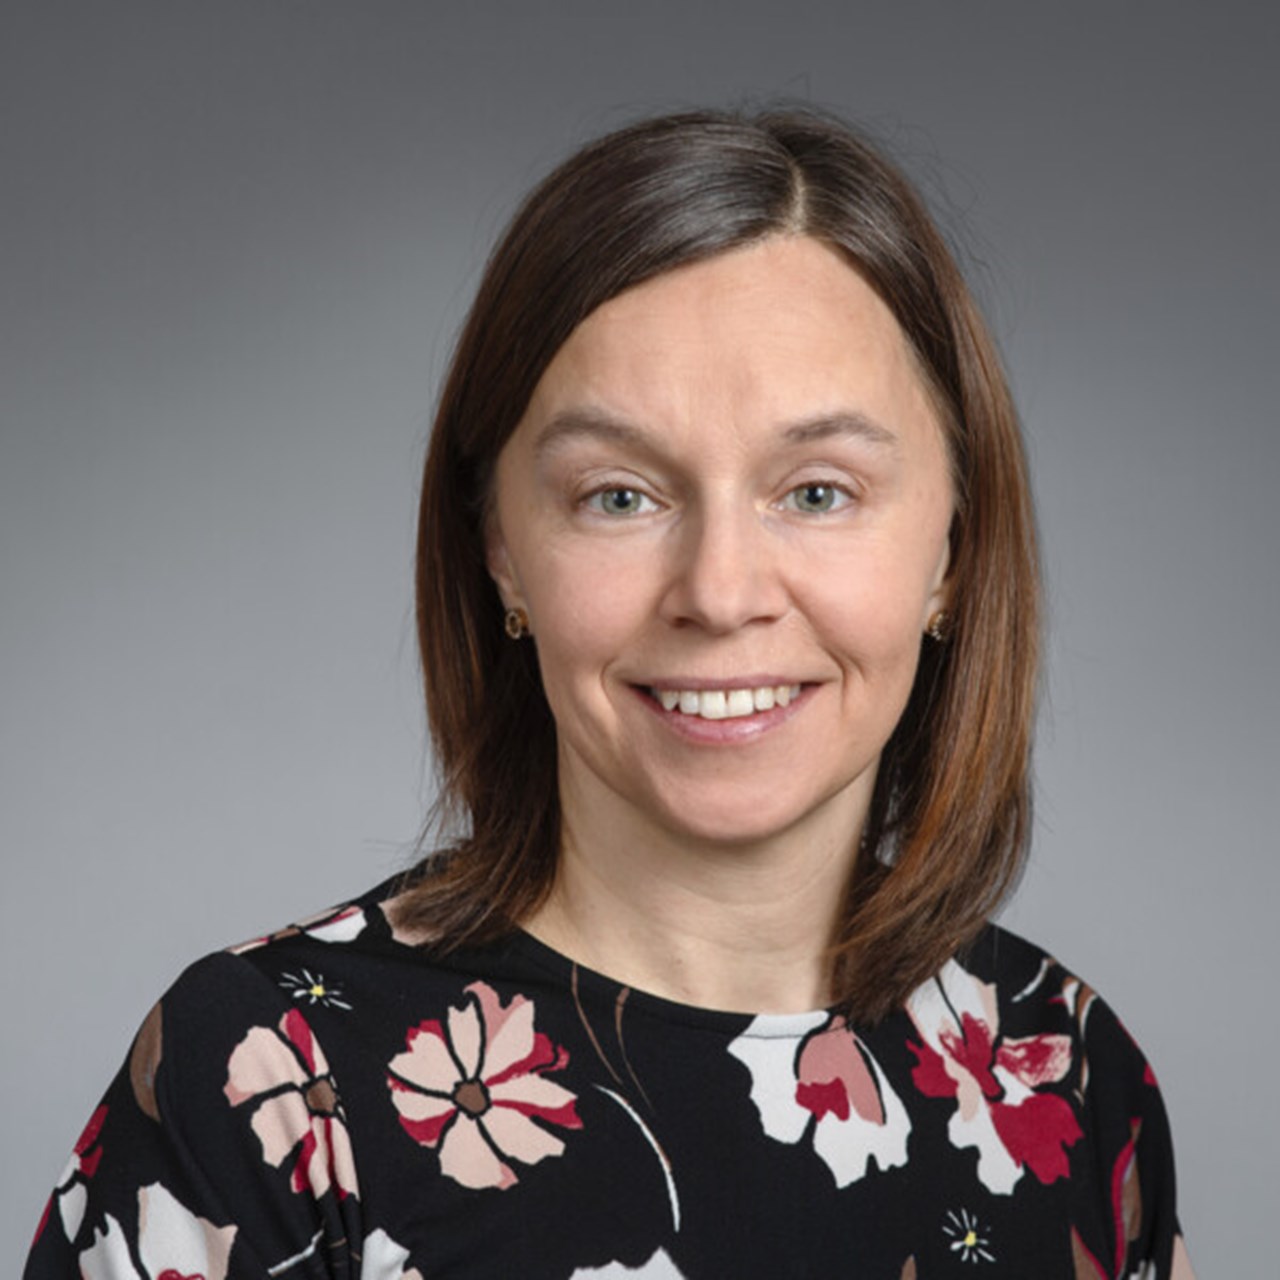 Porträtt på Maria Wennberg, första forskningsassistent vid Institutionen för folkhälsa och klinisk medicin, Umeå universitet.